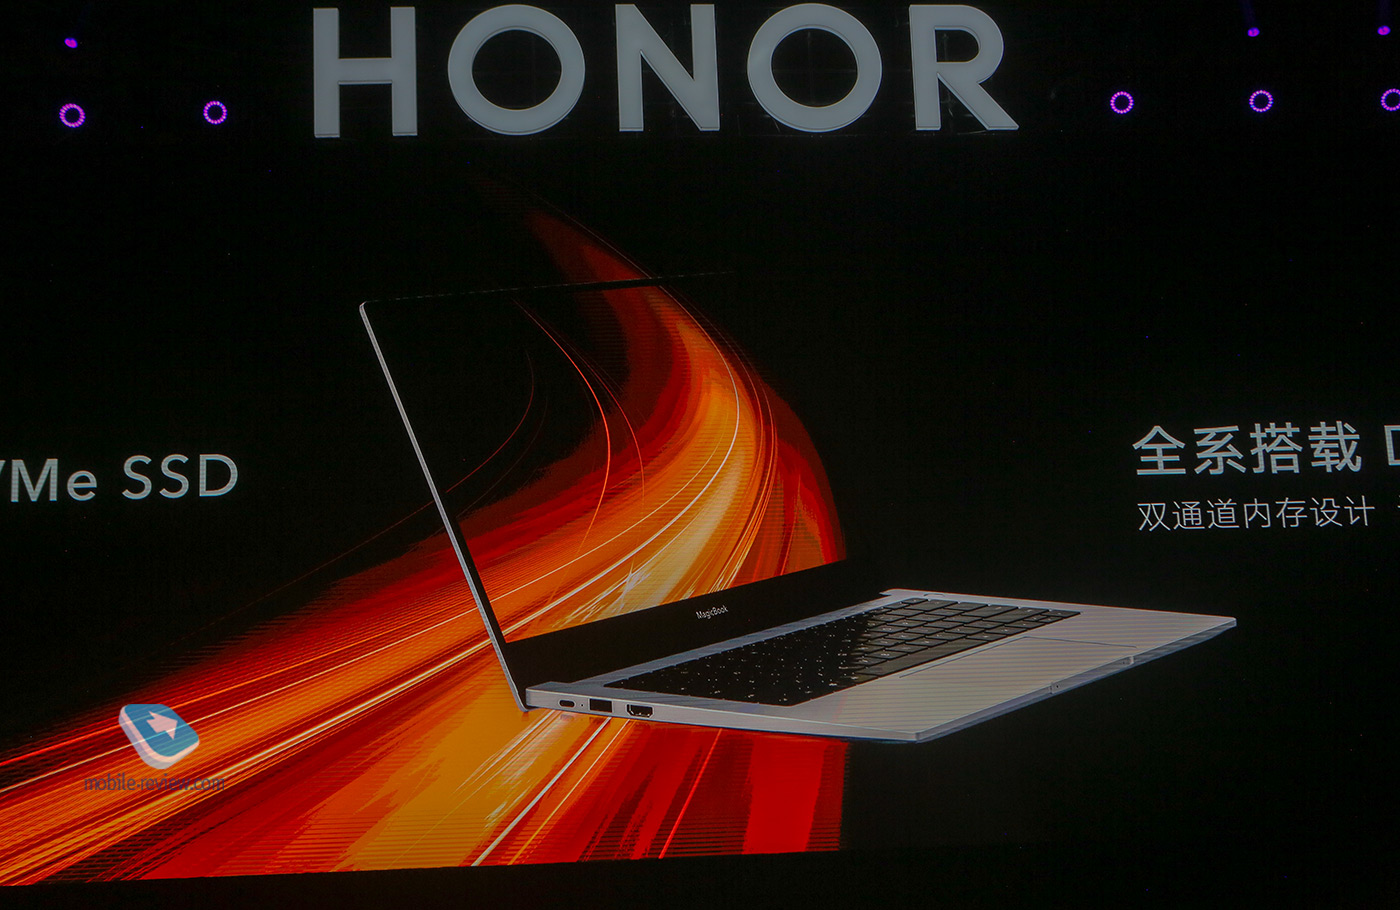  Annunci da Honor: Honor V30, il fiore all'occhiello di Honor, laptop MagicBook, MagicWatch 2